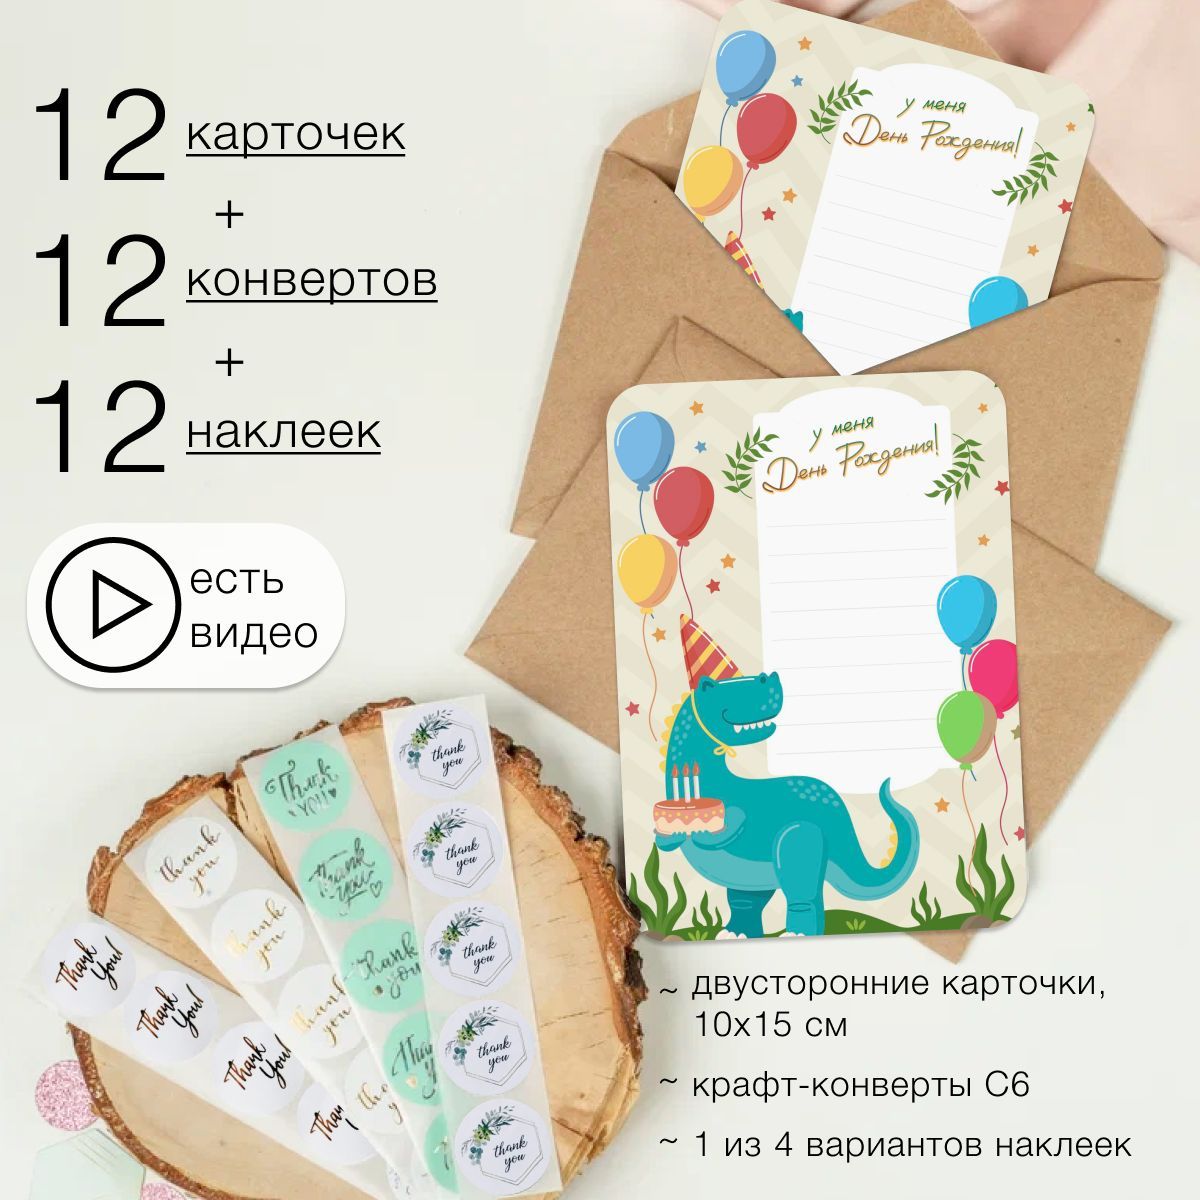 Товары для штампинга - ТриНити - интернет магазин товаров для хобби с доставкой по России